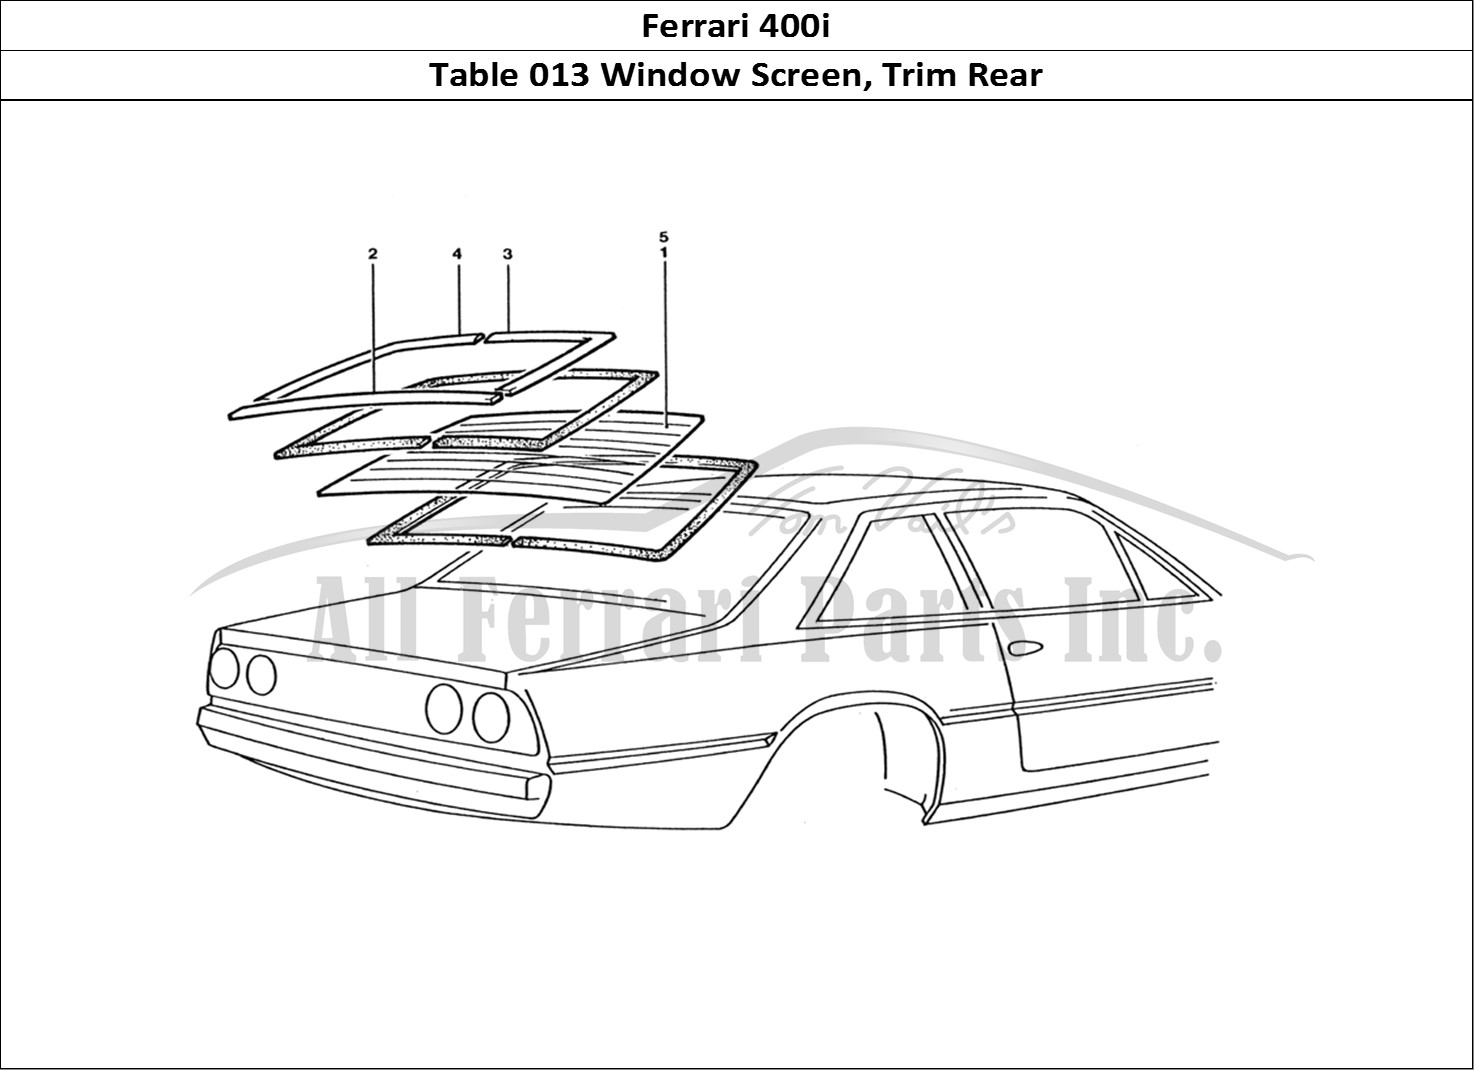 Ferrari Parts Ferrari 400 GT (Coachwork) Page 013 Rear Screen